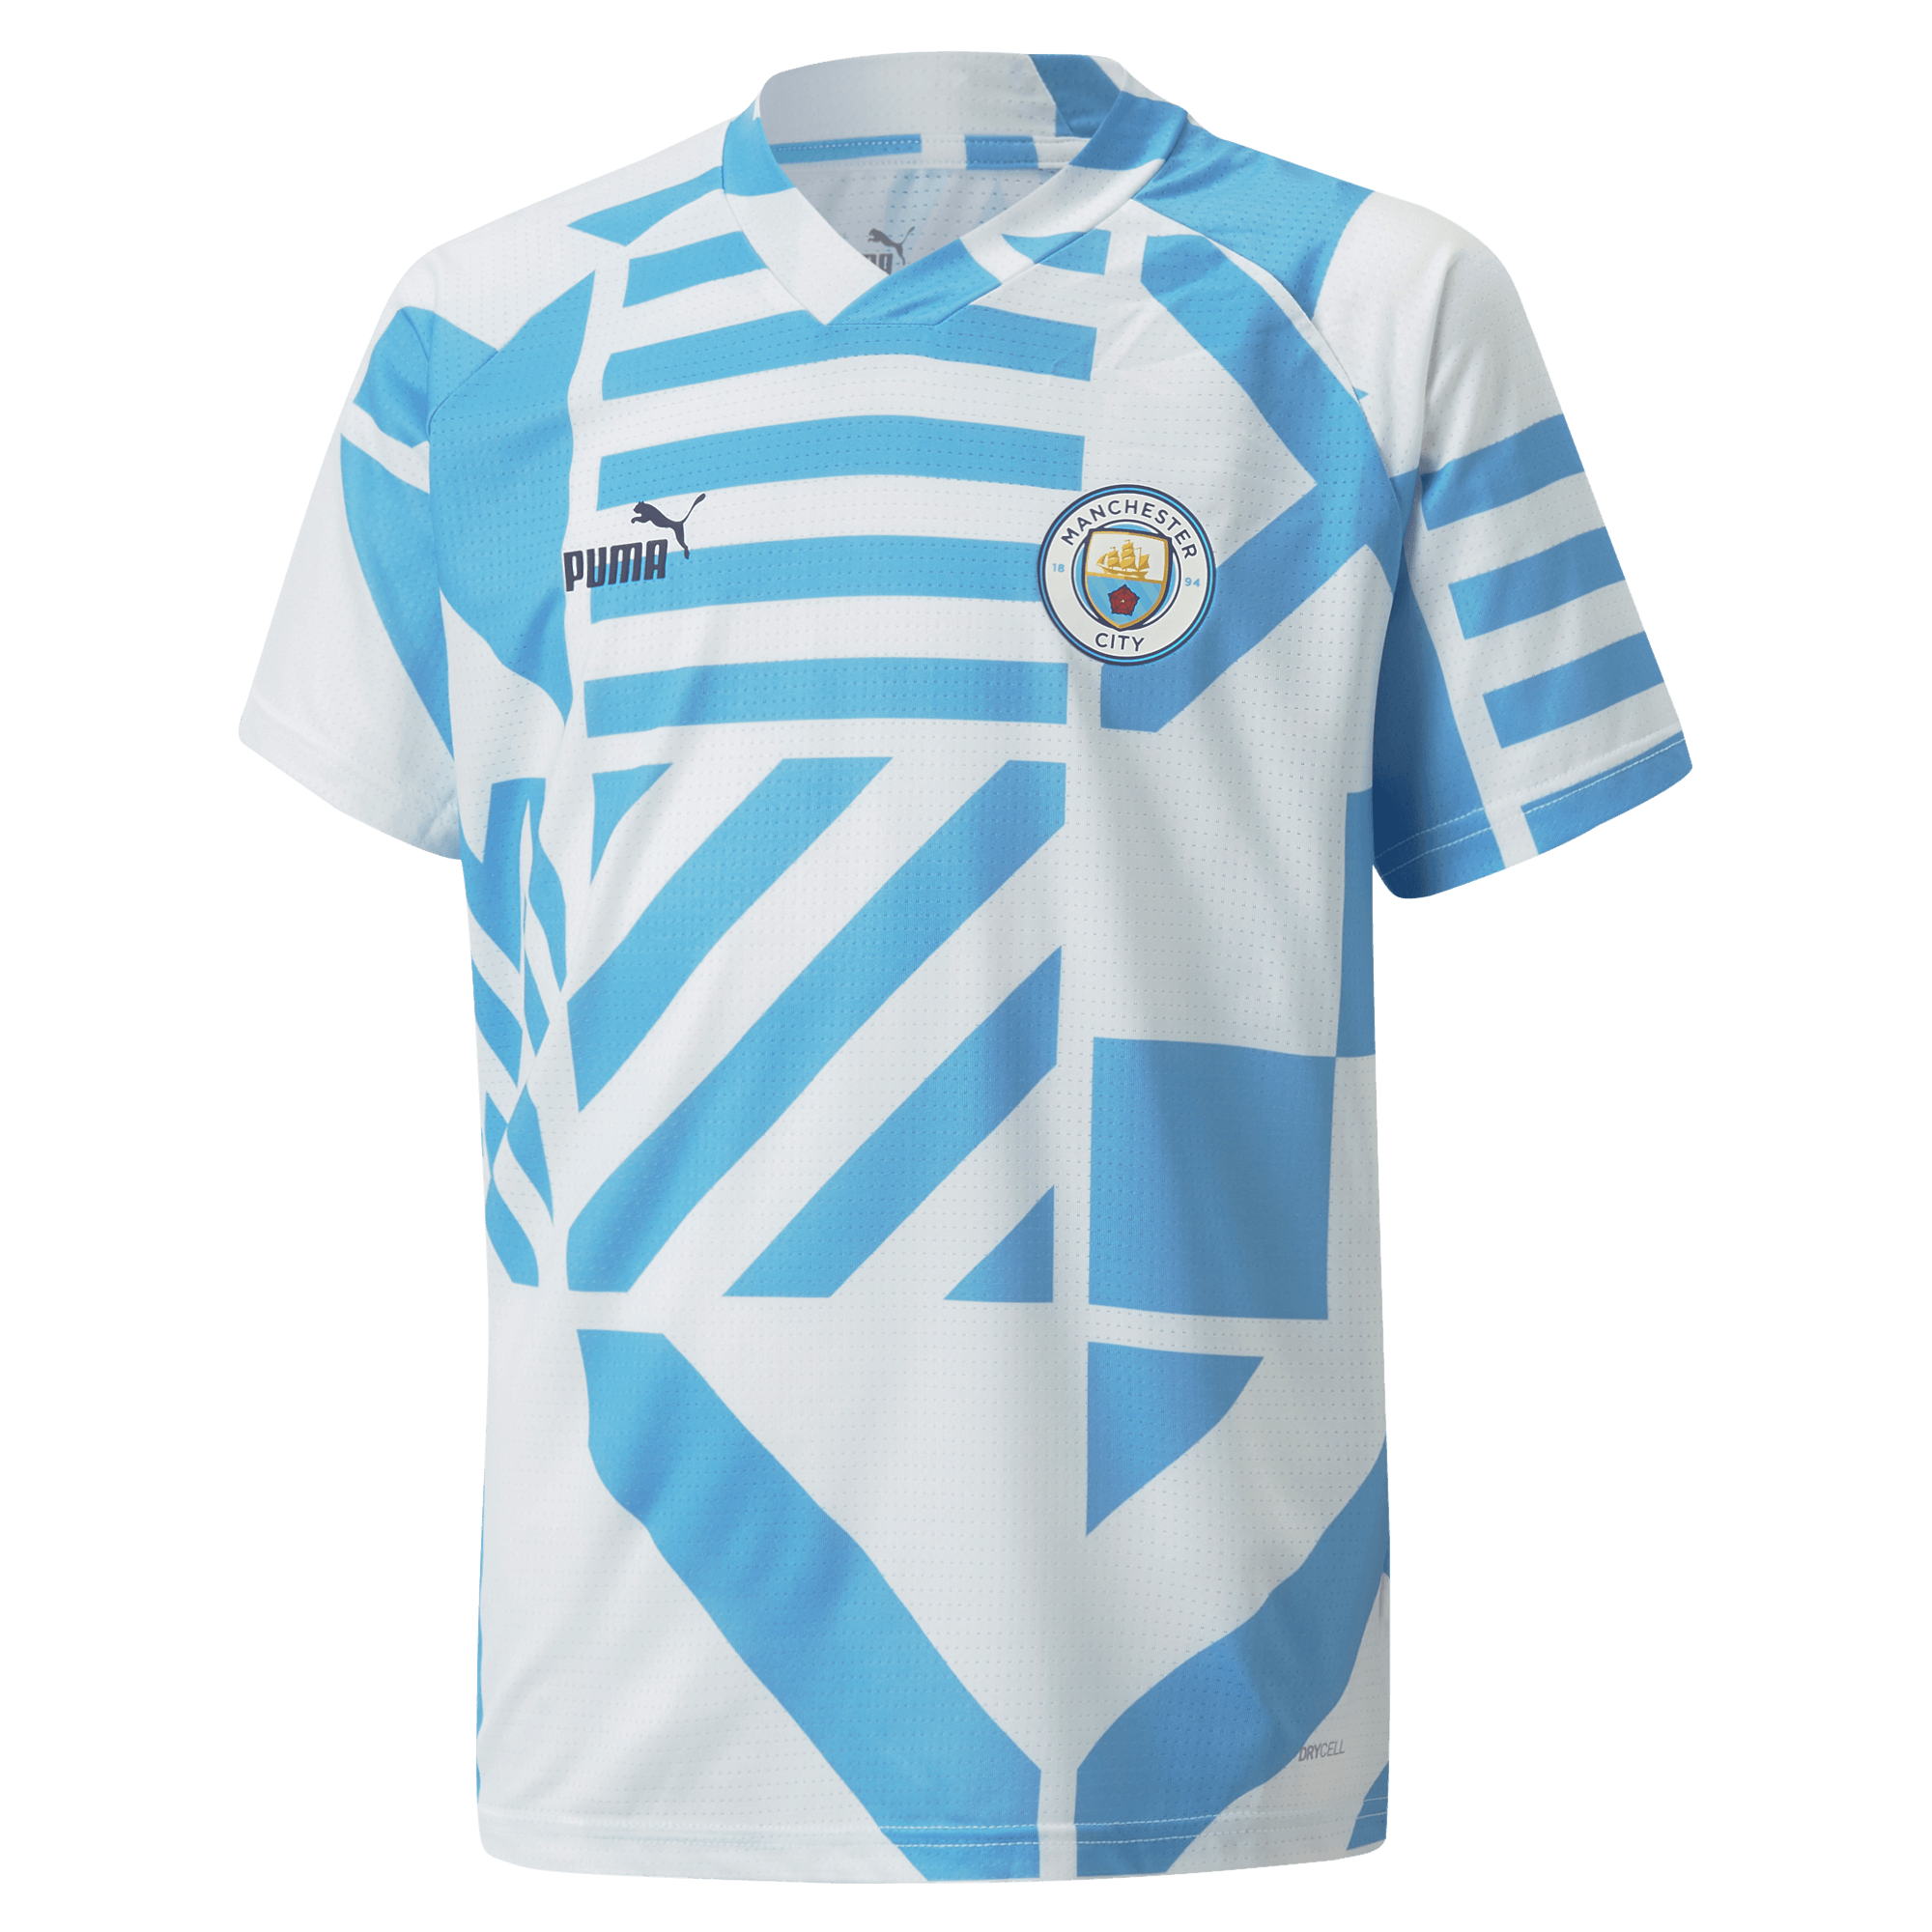 A Bambini Di Marca Abbigliamento Official Merchandise I Ragazzi Manchester City PJ 'S 